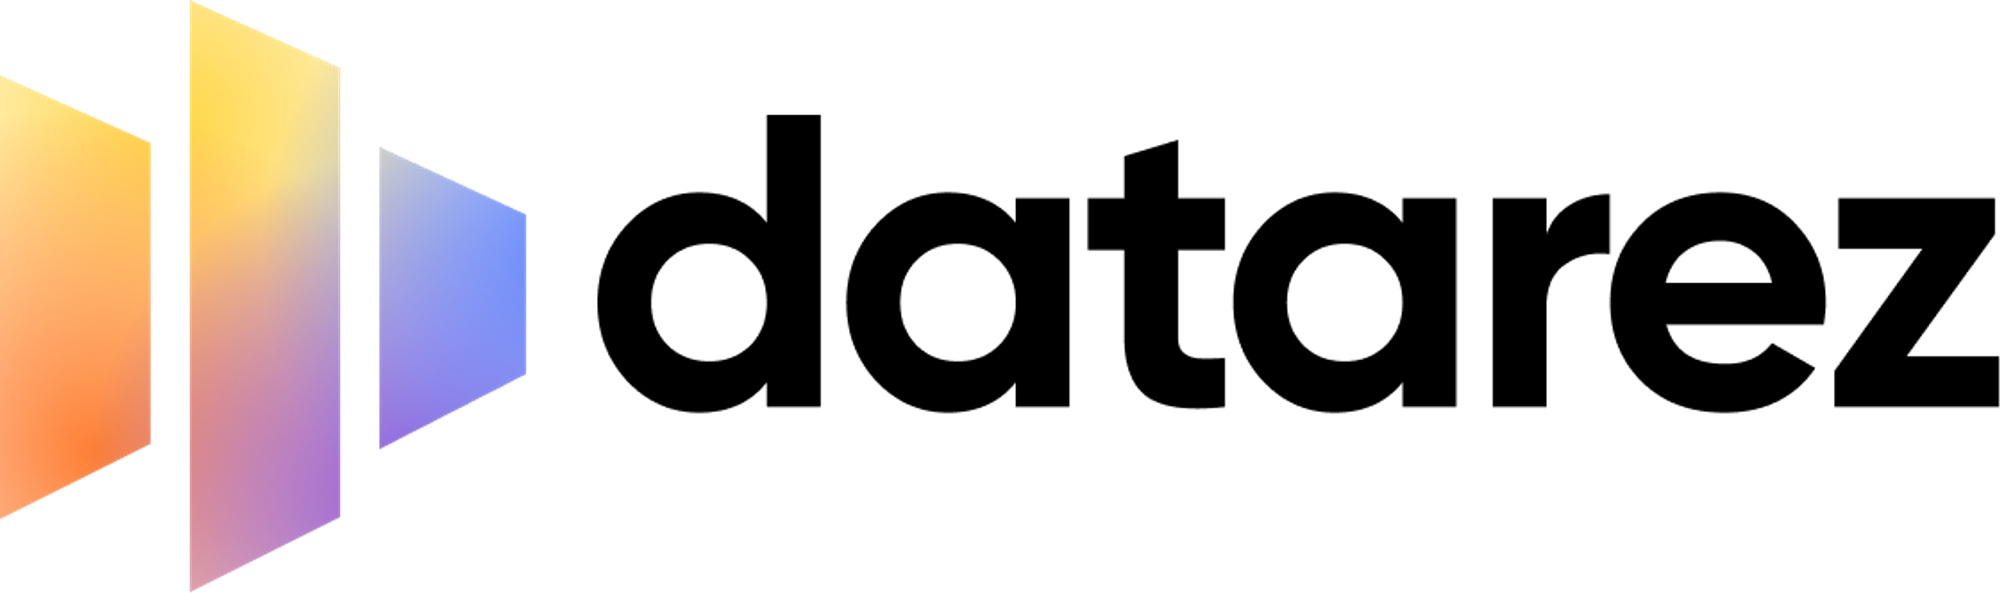 Modern logo design for datarez.com